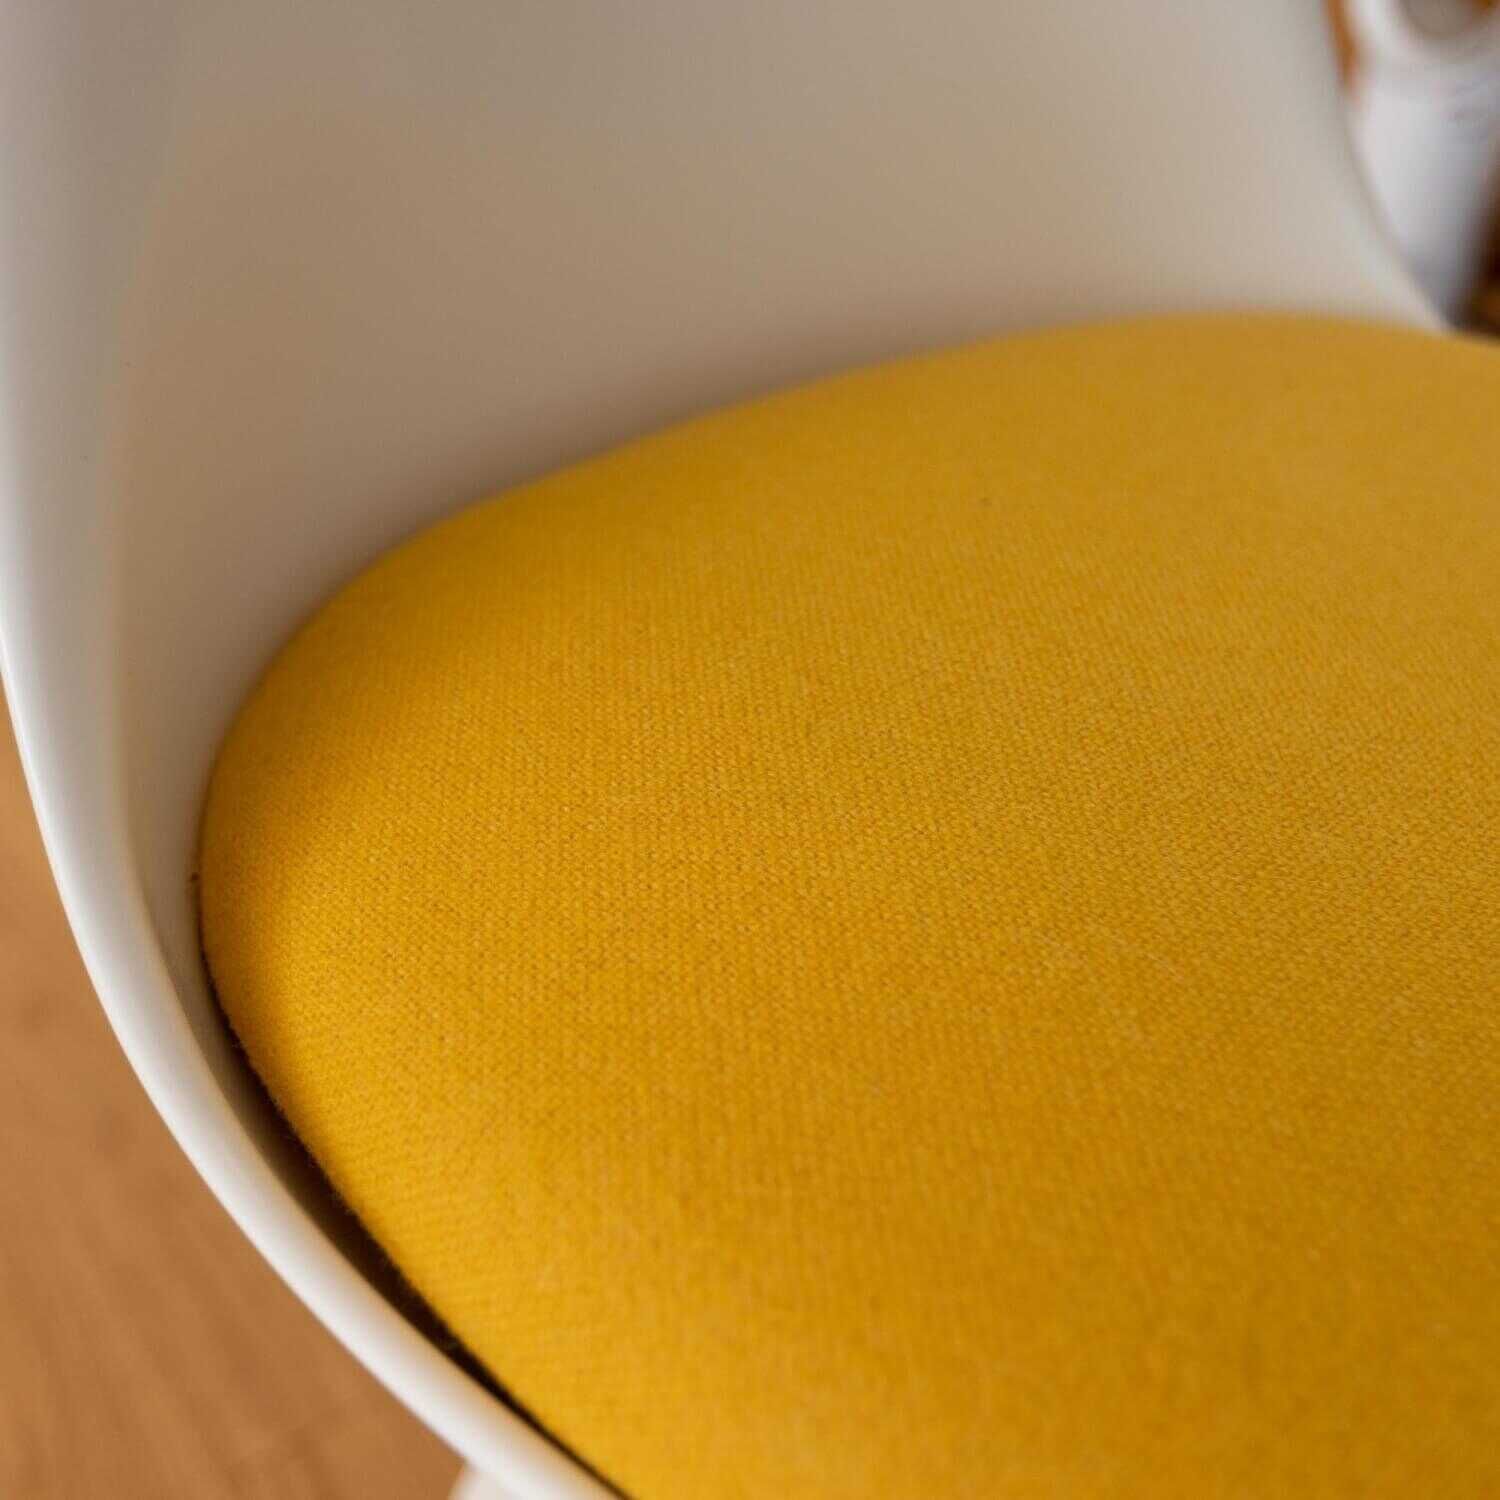 4-er Stuhlgruppe Saarinen Mit Sitzpolster Stoff Tonus 440 Gelb Gestell Weiß